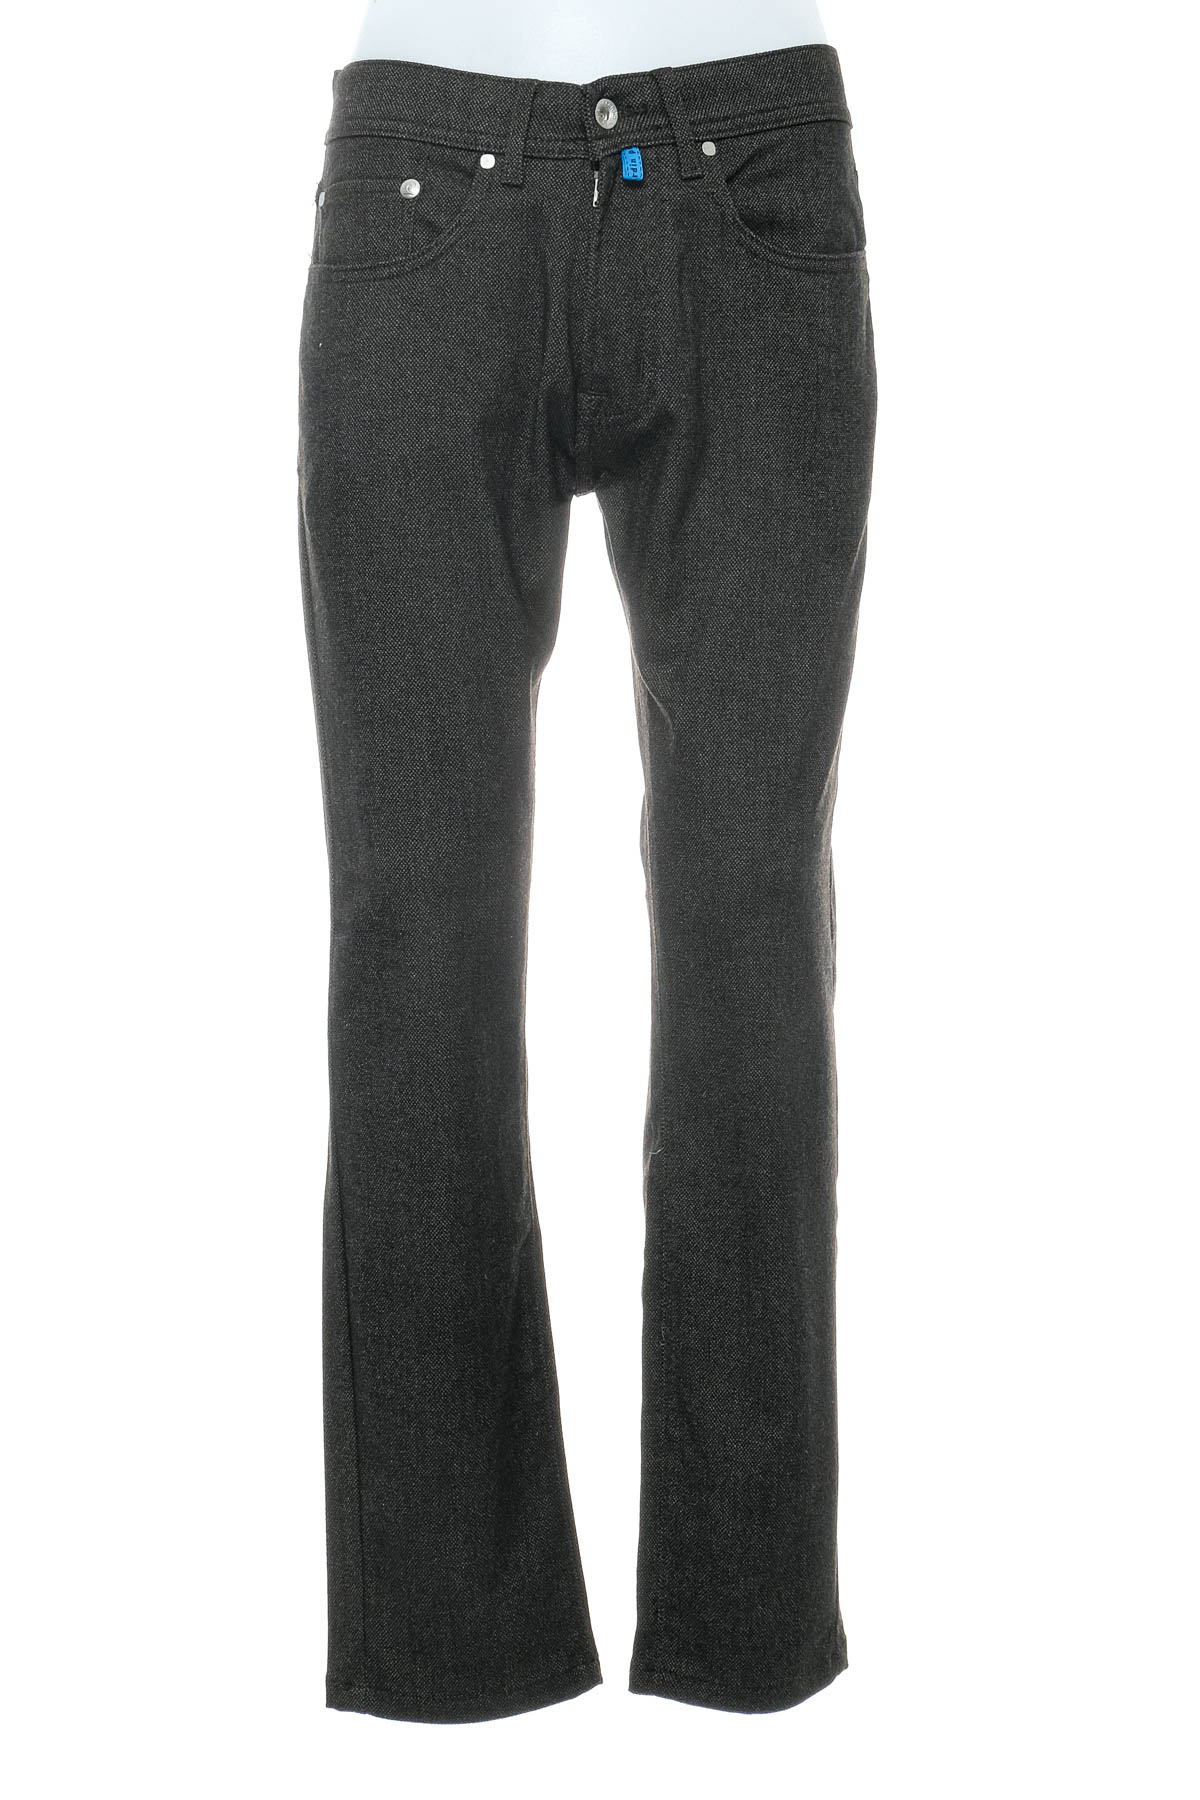 Men's trousers - Pierre Cardin - 0